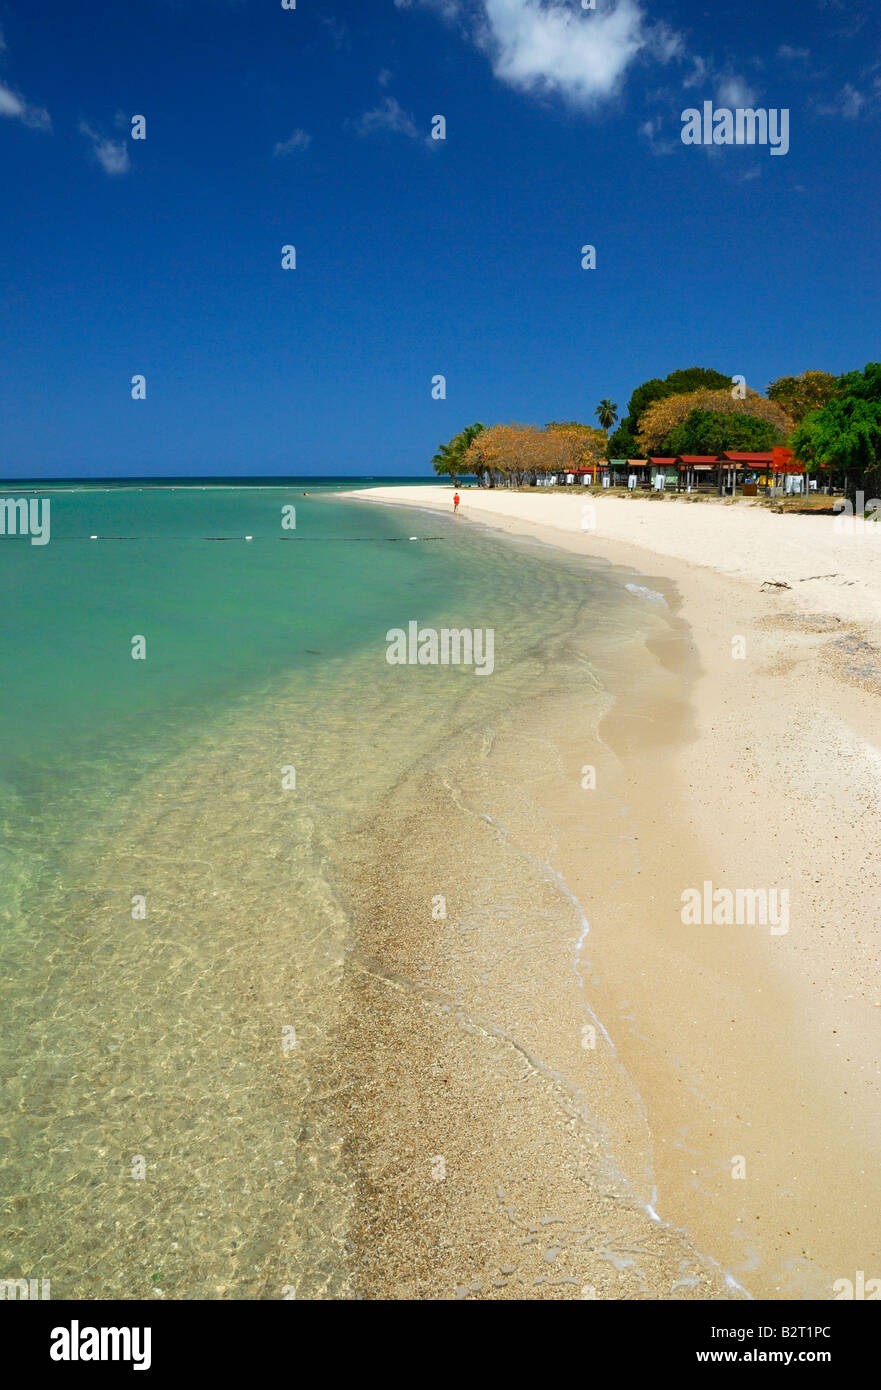 La belle plage de sable blanc de Punta Moja casabe, un joyau caché de l'habituel chemin battu el combate, Puerto Rico. Banque D'Images